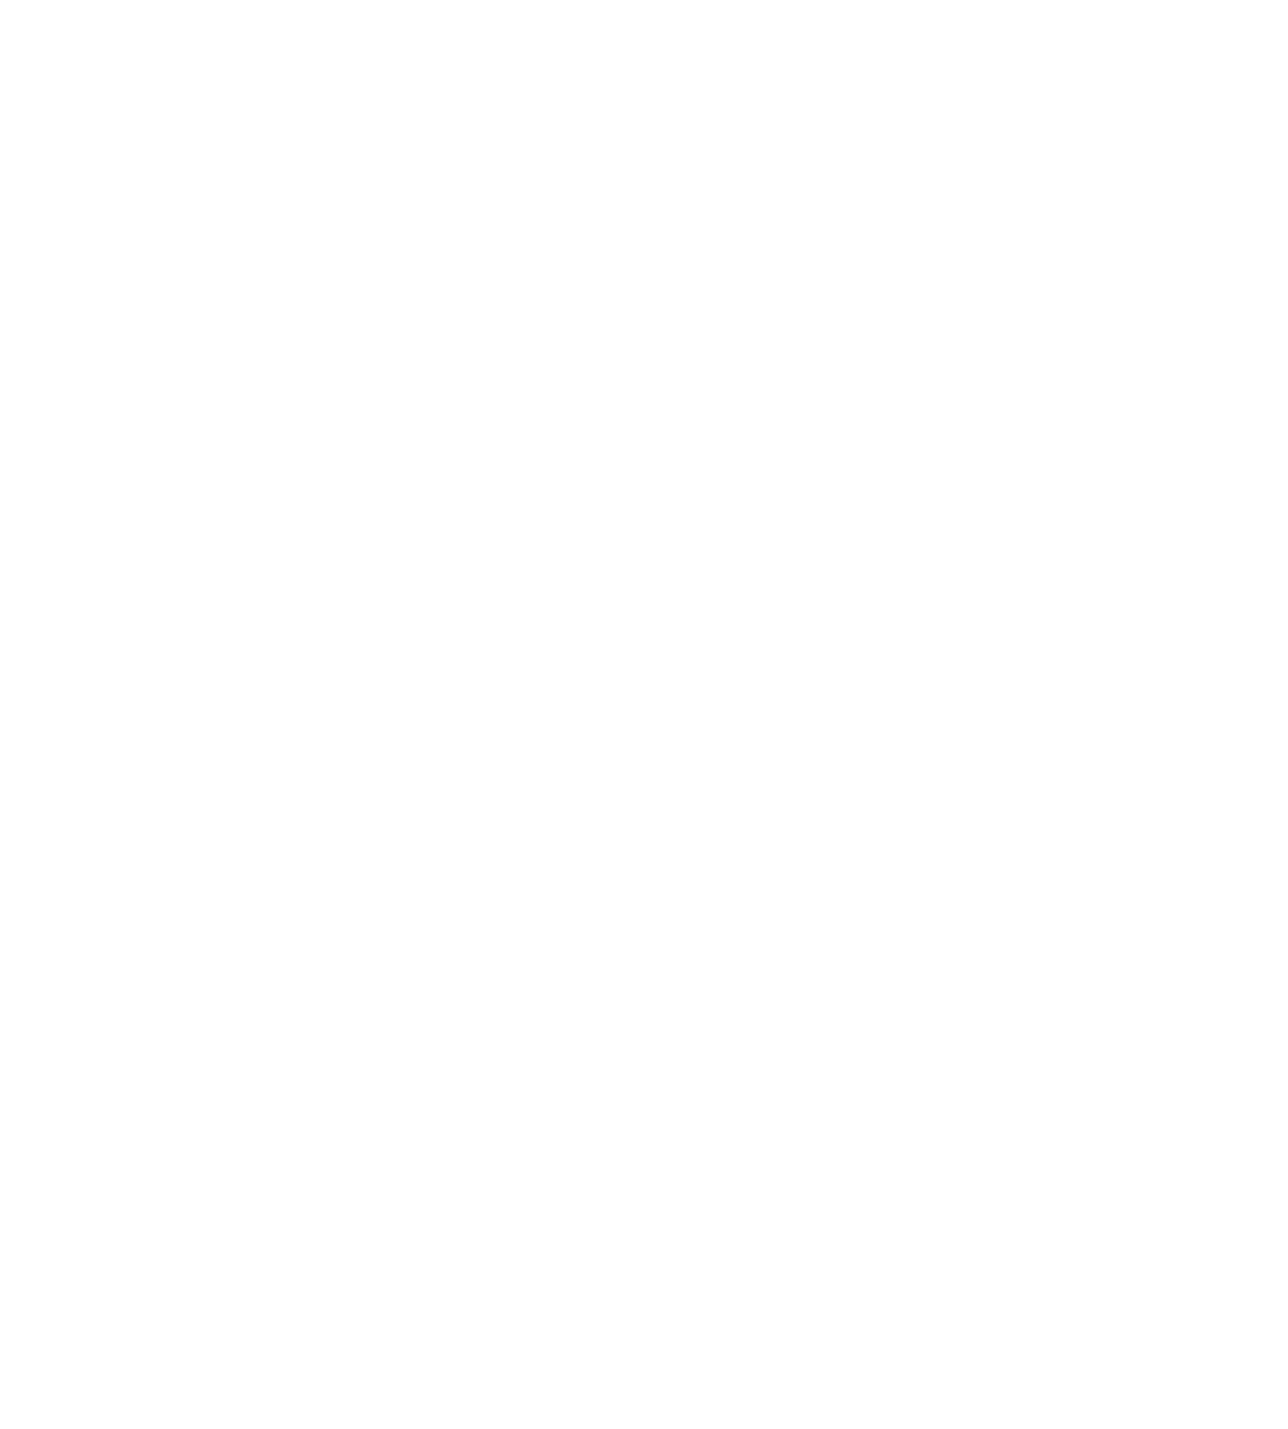 The Rum Barrel